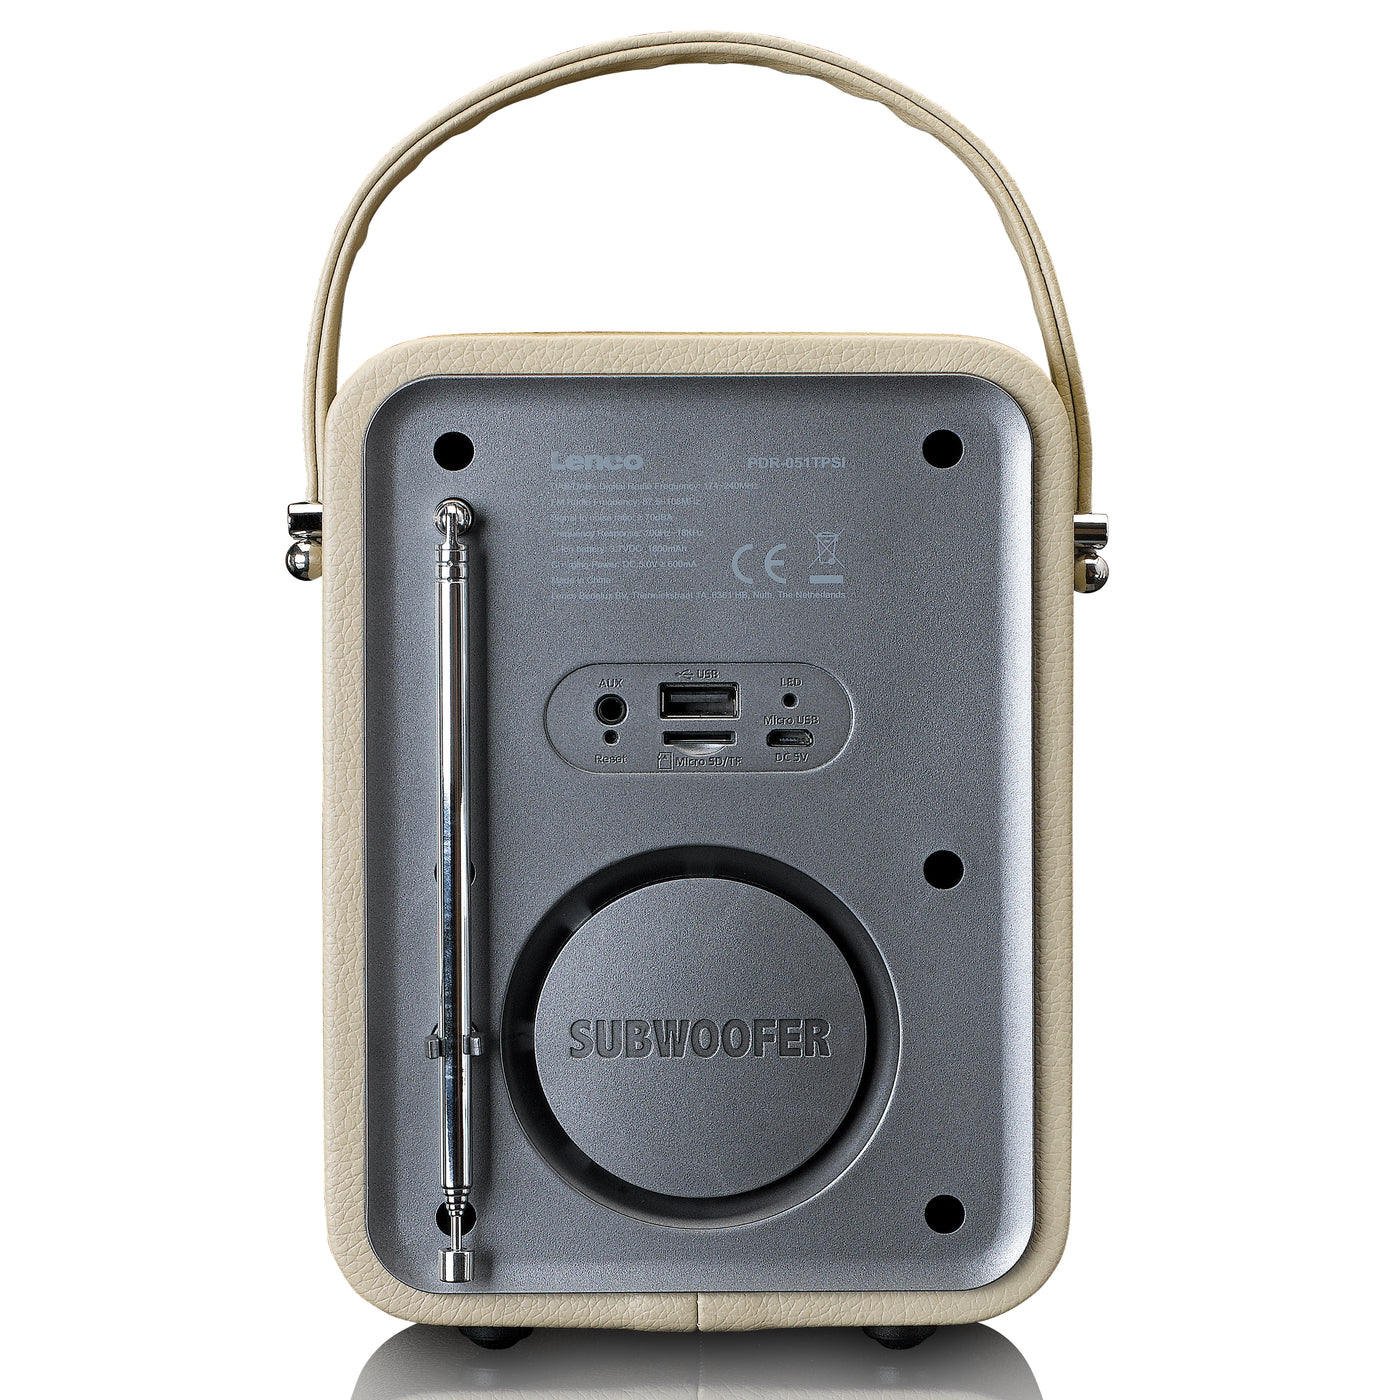 Lenco PDR-051TPSI  - Tragbares DAB+ FM-Radio mit Bluetooth® und AUX-Eingang, aufladbarer Batterie - Taupe